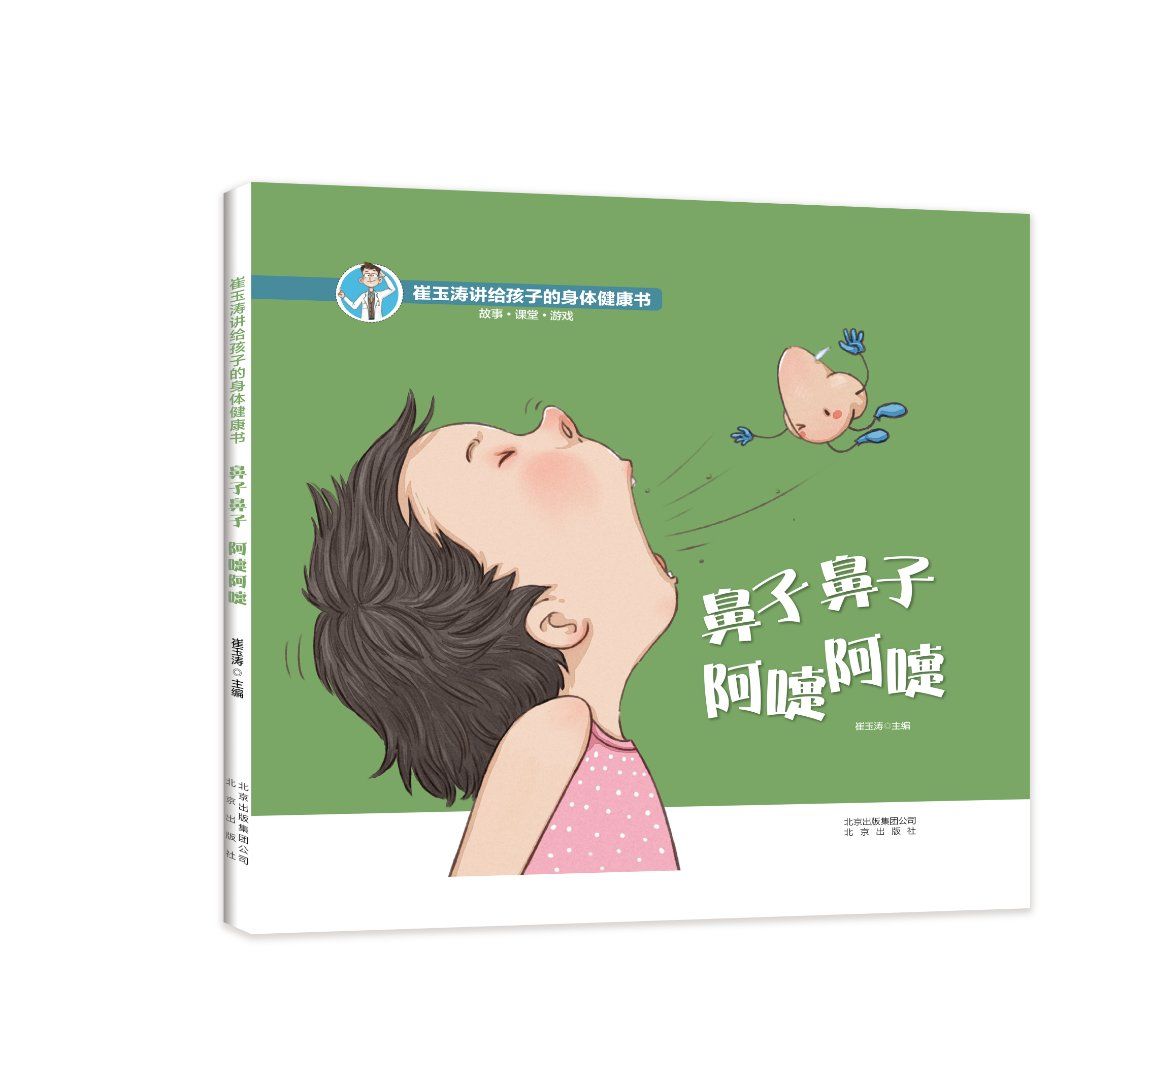 鼻子鼻子 阿嚏阿嚏——《崔玉涛讲给孩子的身体健康书》